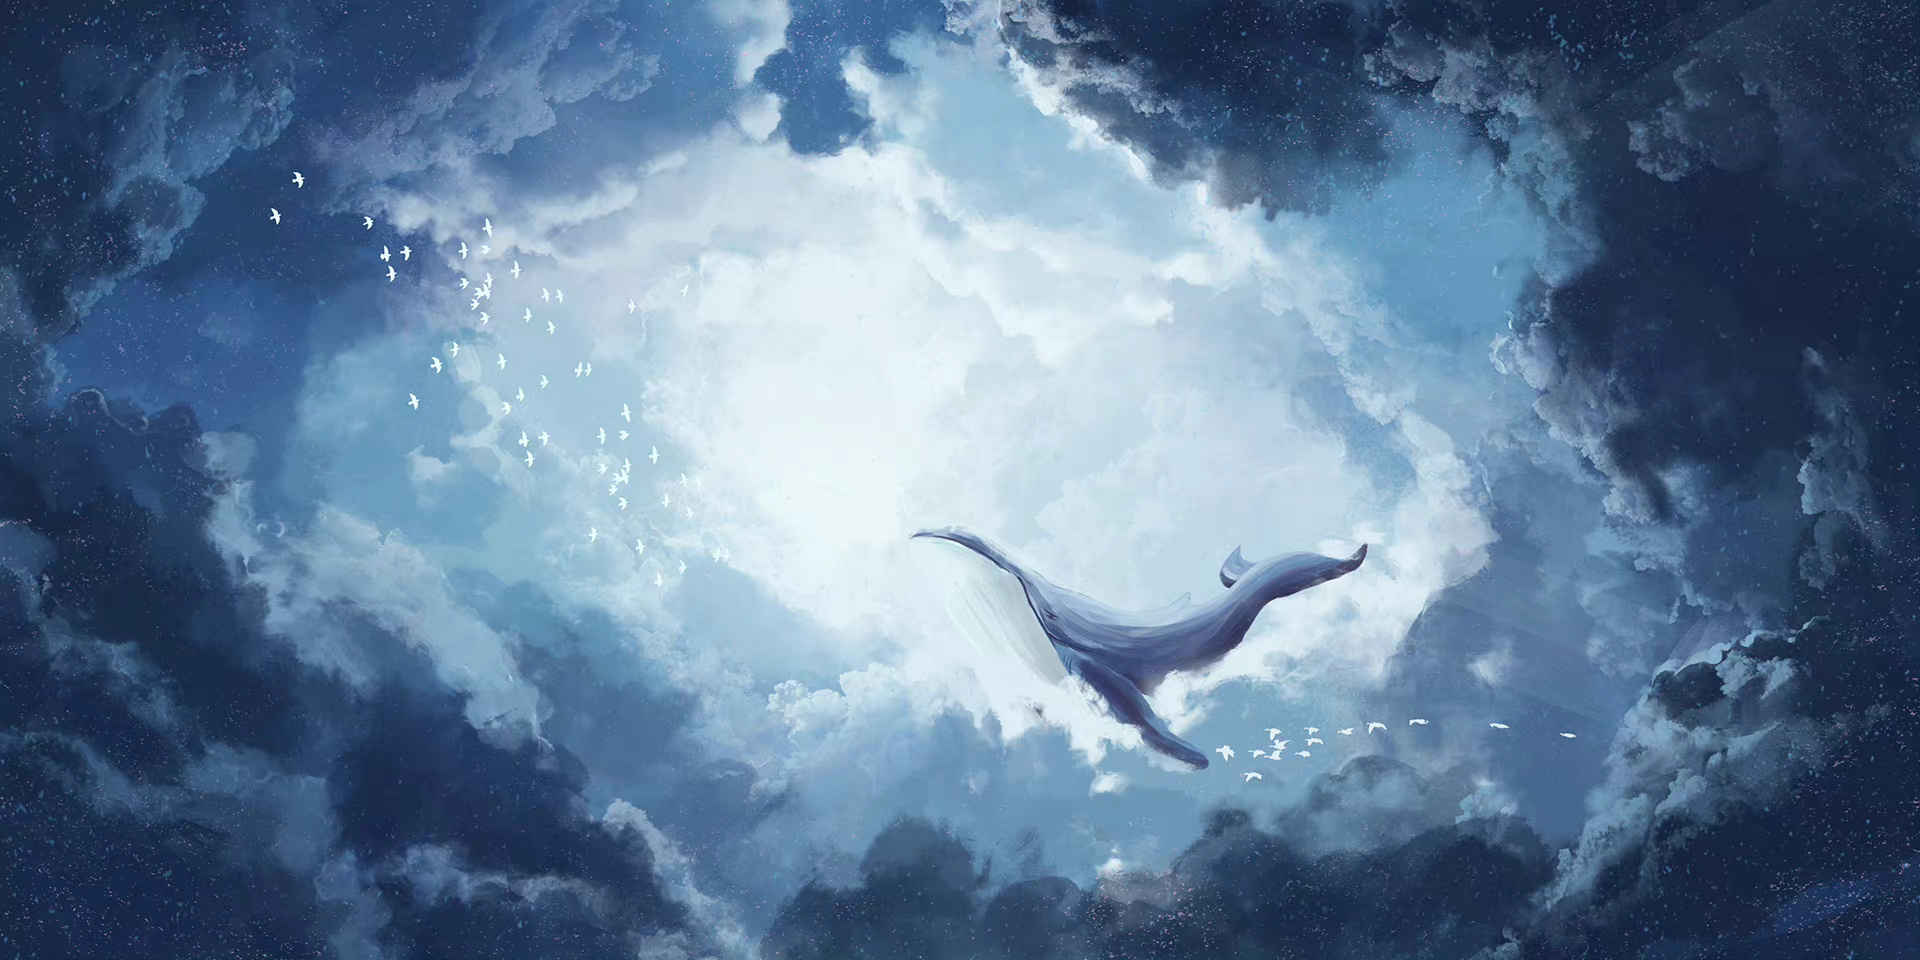 唯美梦幻天空飞鸟与鲸风景背景素材-